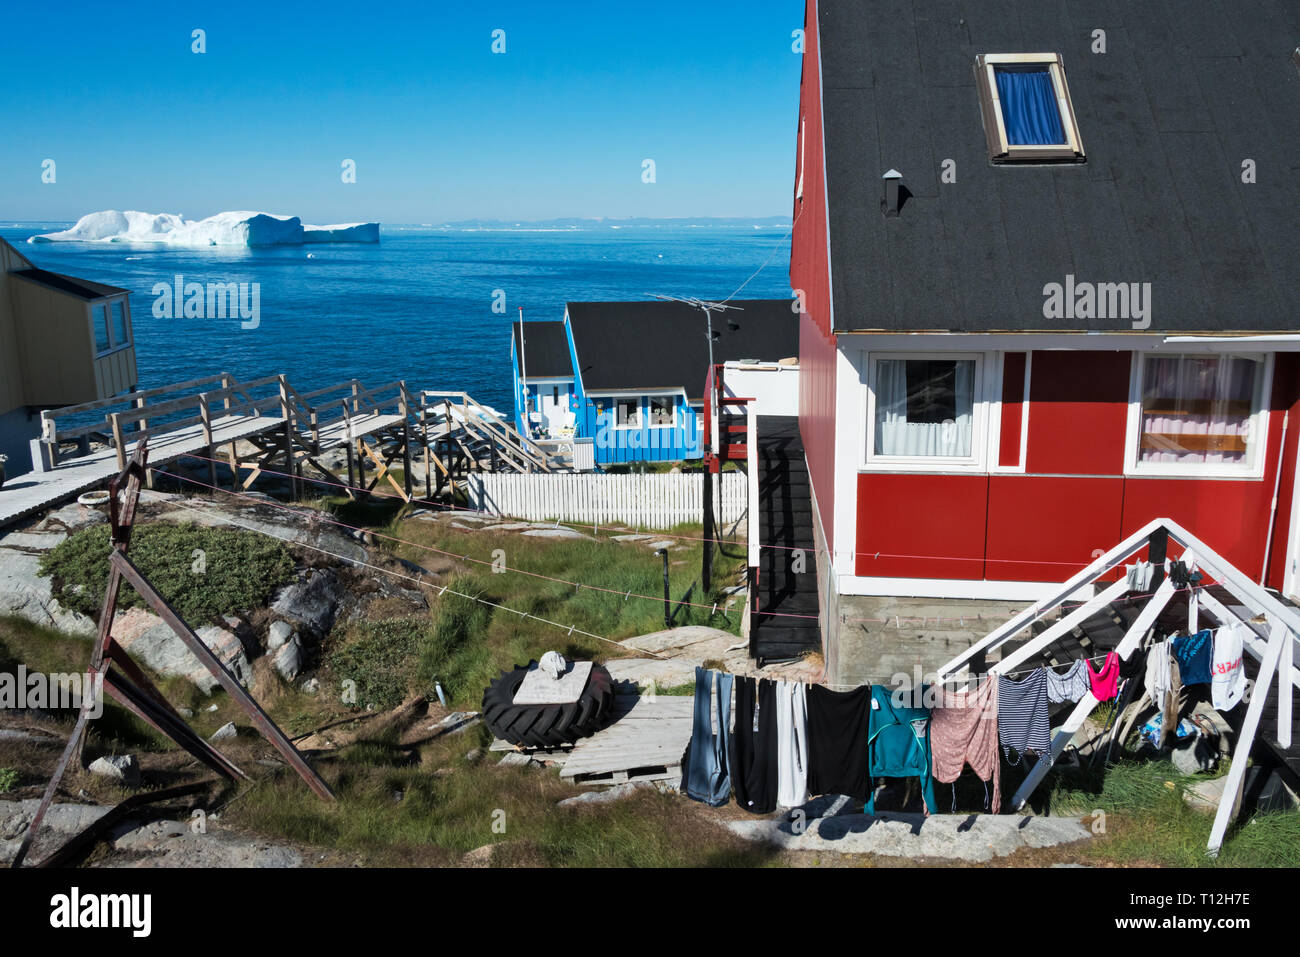 Maisons peintes de couleurs vives, Ilulissat, Groenland. Banque D'Images